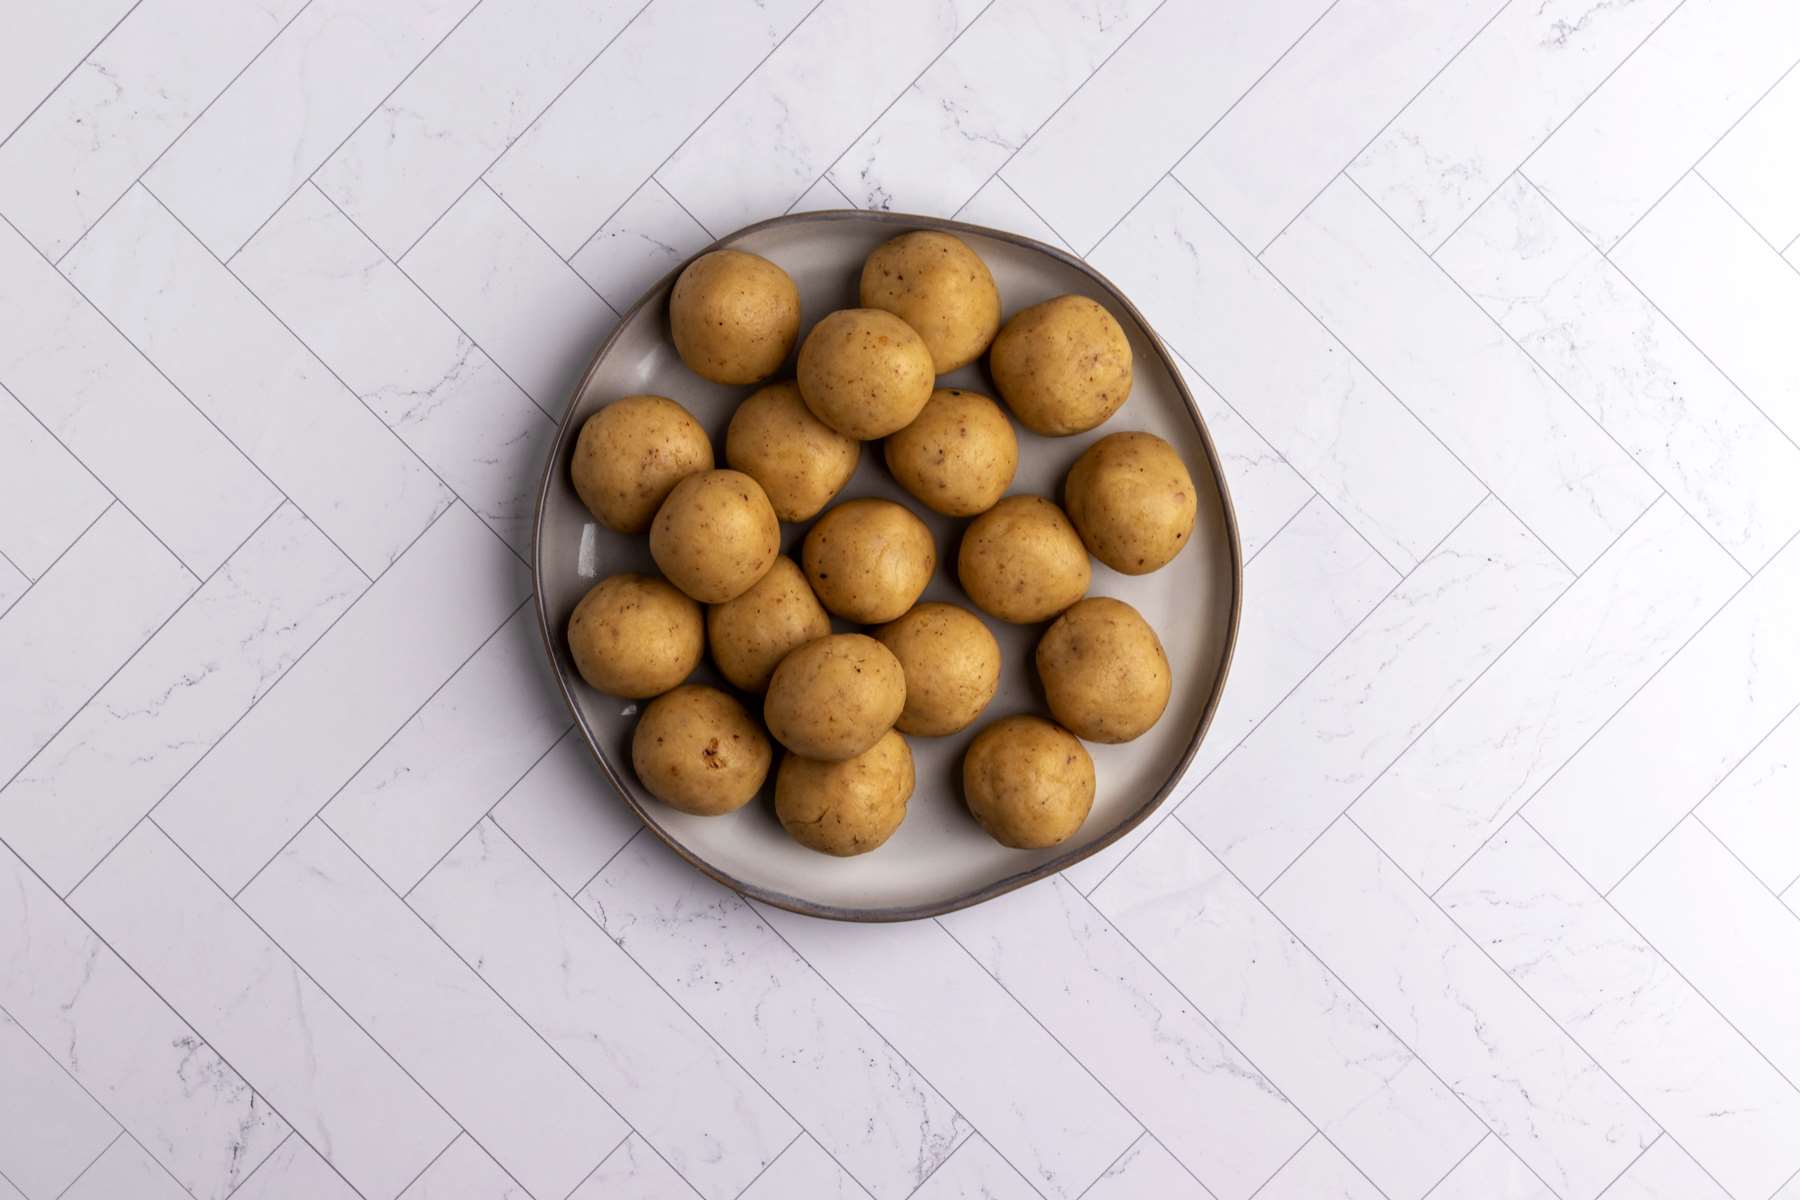 Walnut cookies dough balls on a plate.